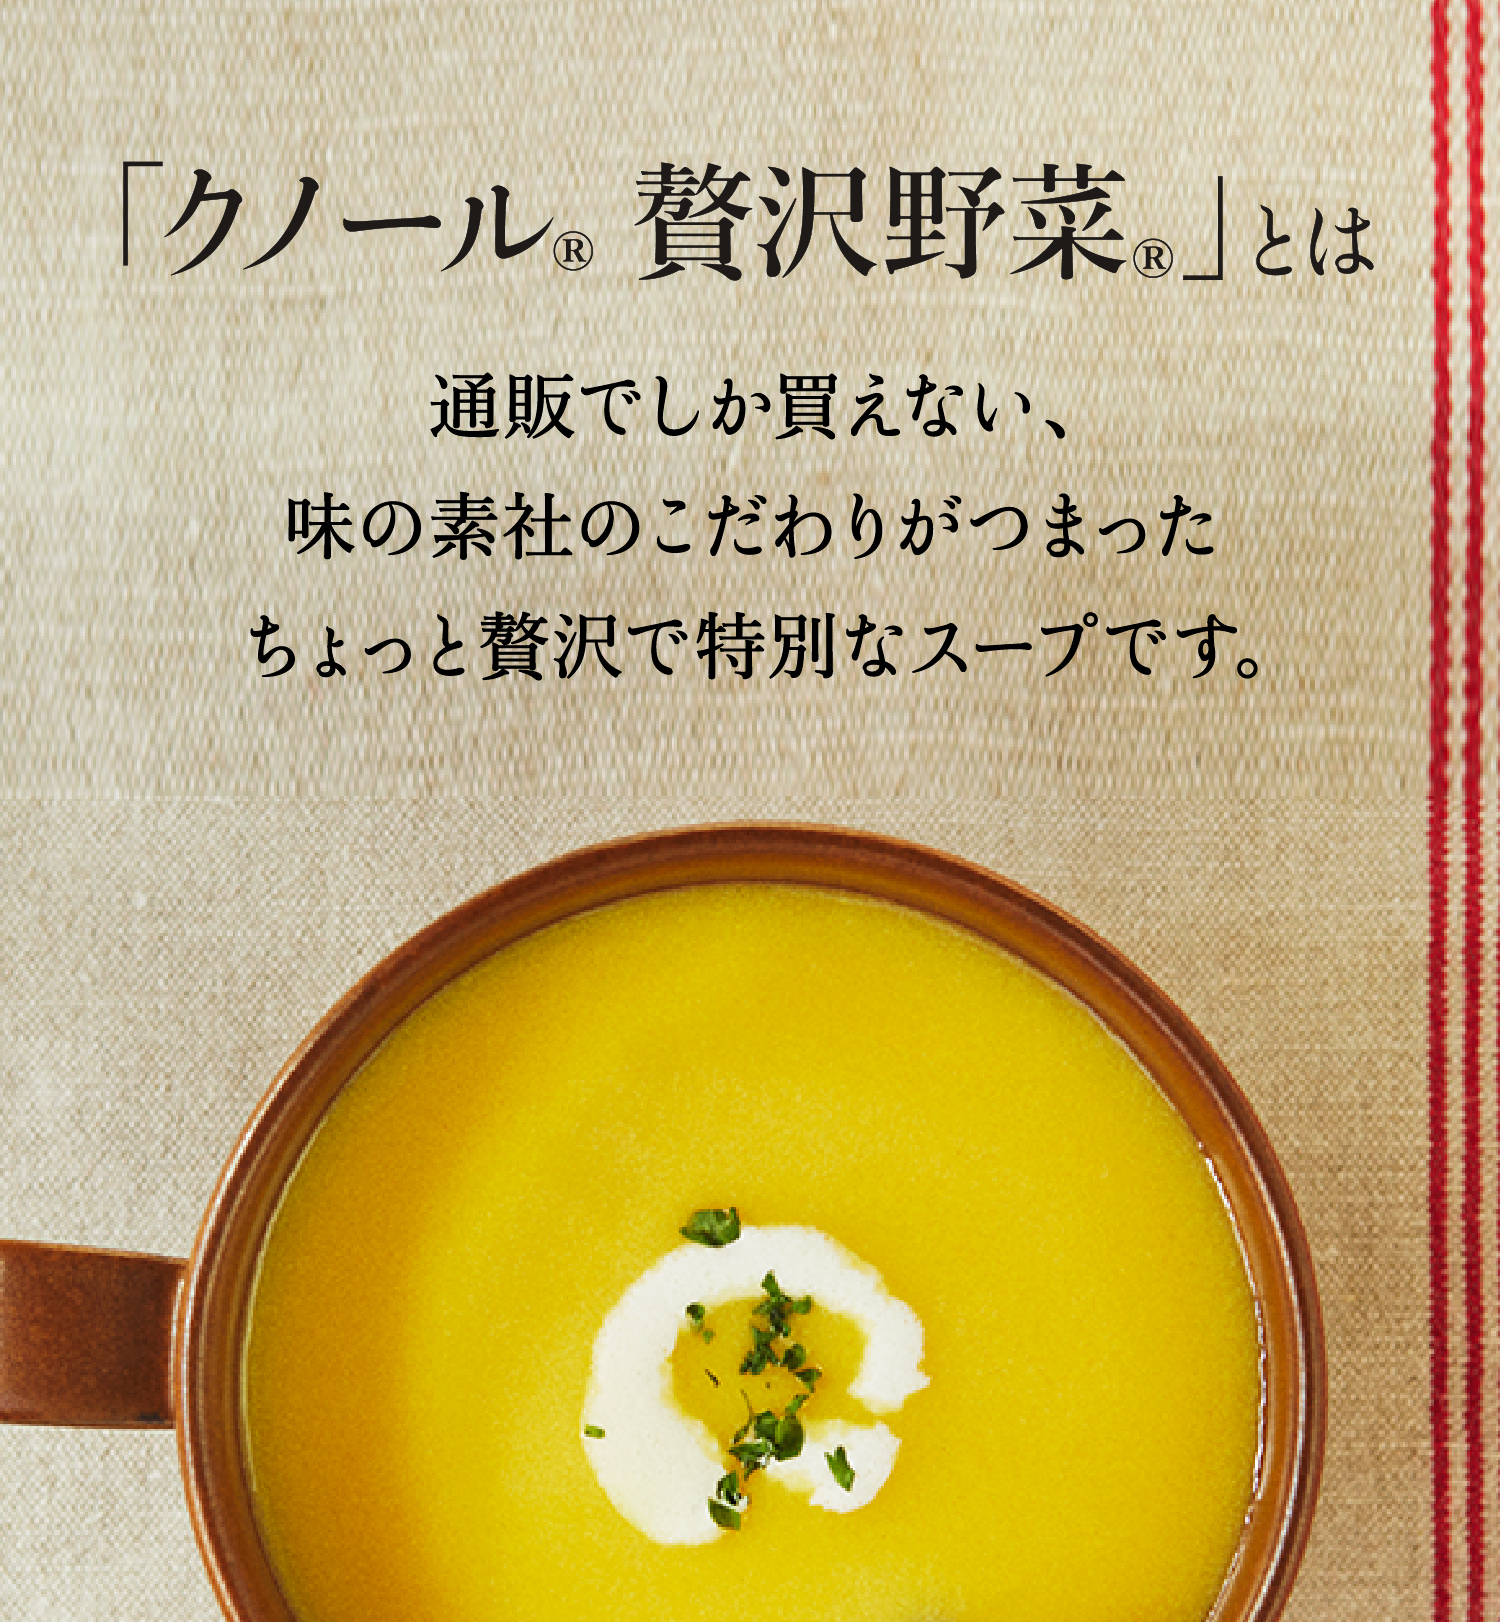 「クノール 贅沢野菜」とは 通販でしか買えない、味の素社のこだわりがつまったちょっと贅沢で特別なスープです。